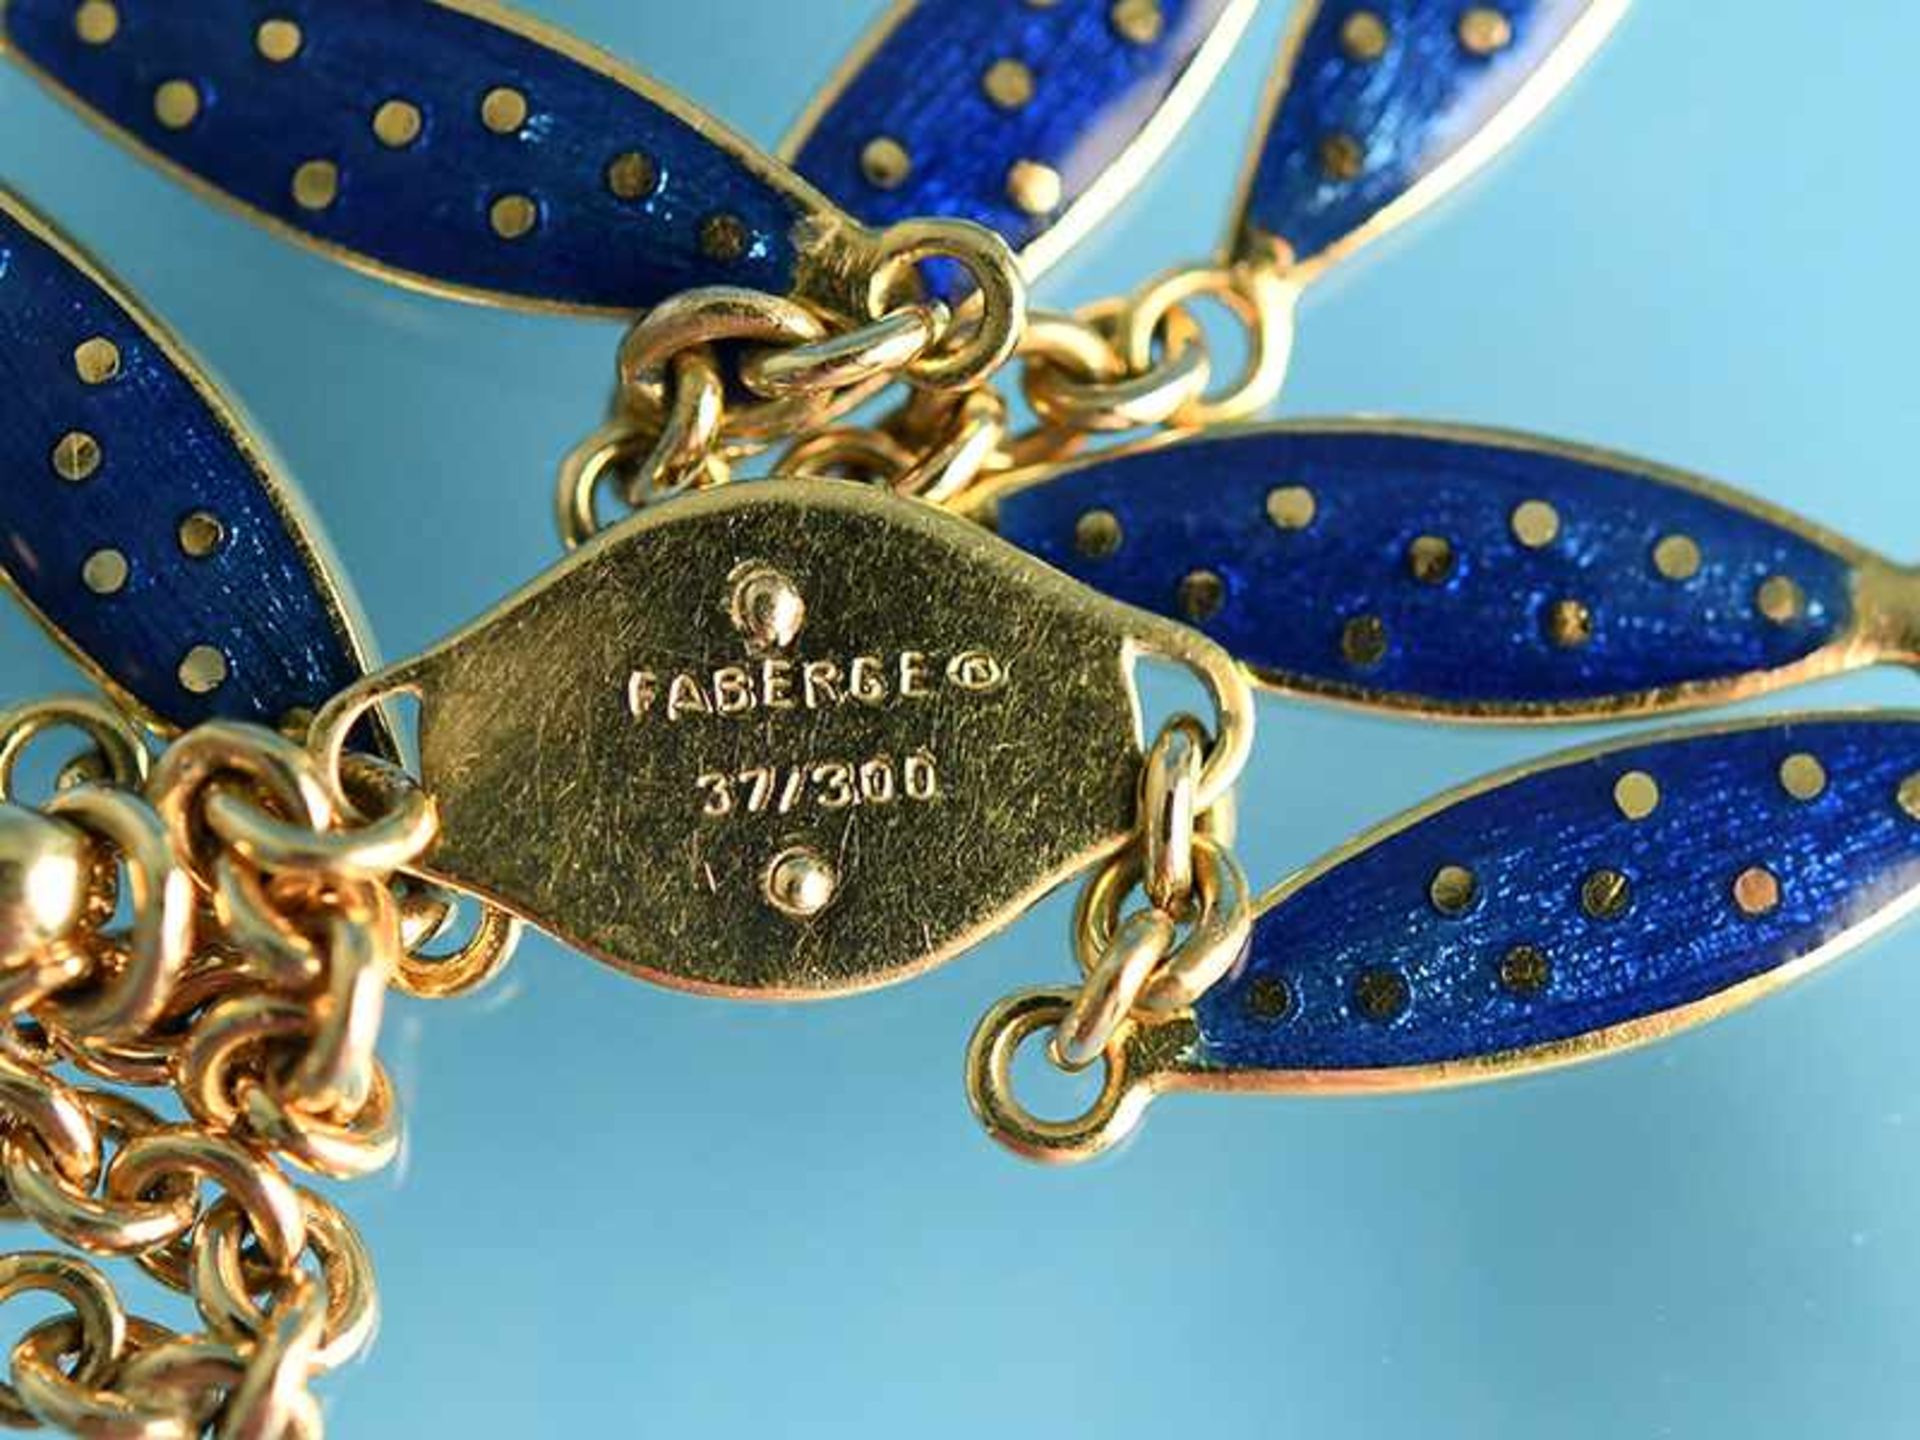 Collier mit Emaille, Collection Fabergé by Victor Mayer, No. 37/ 300, Pforzheim, 20. Jh. 750/- - Bild 2 aus 8